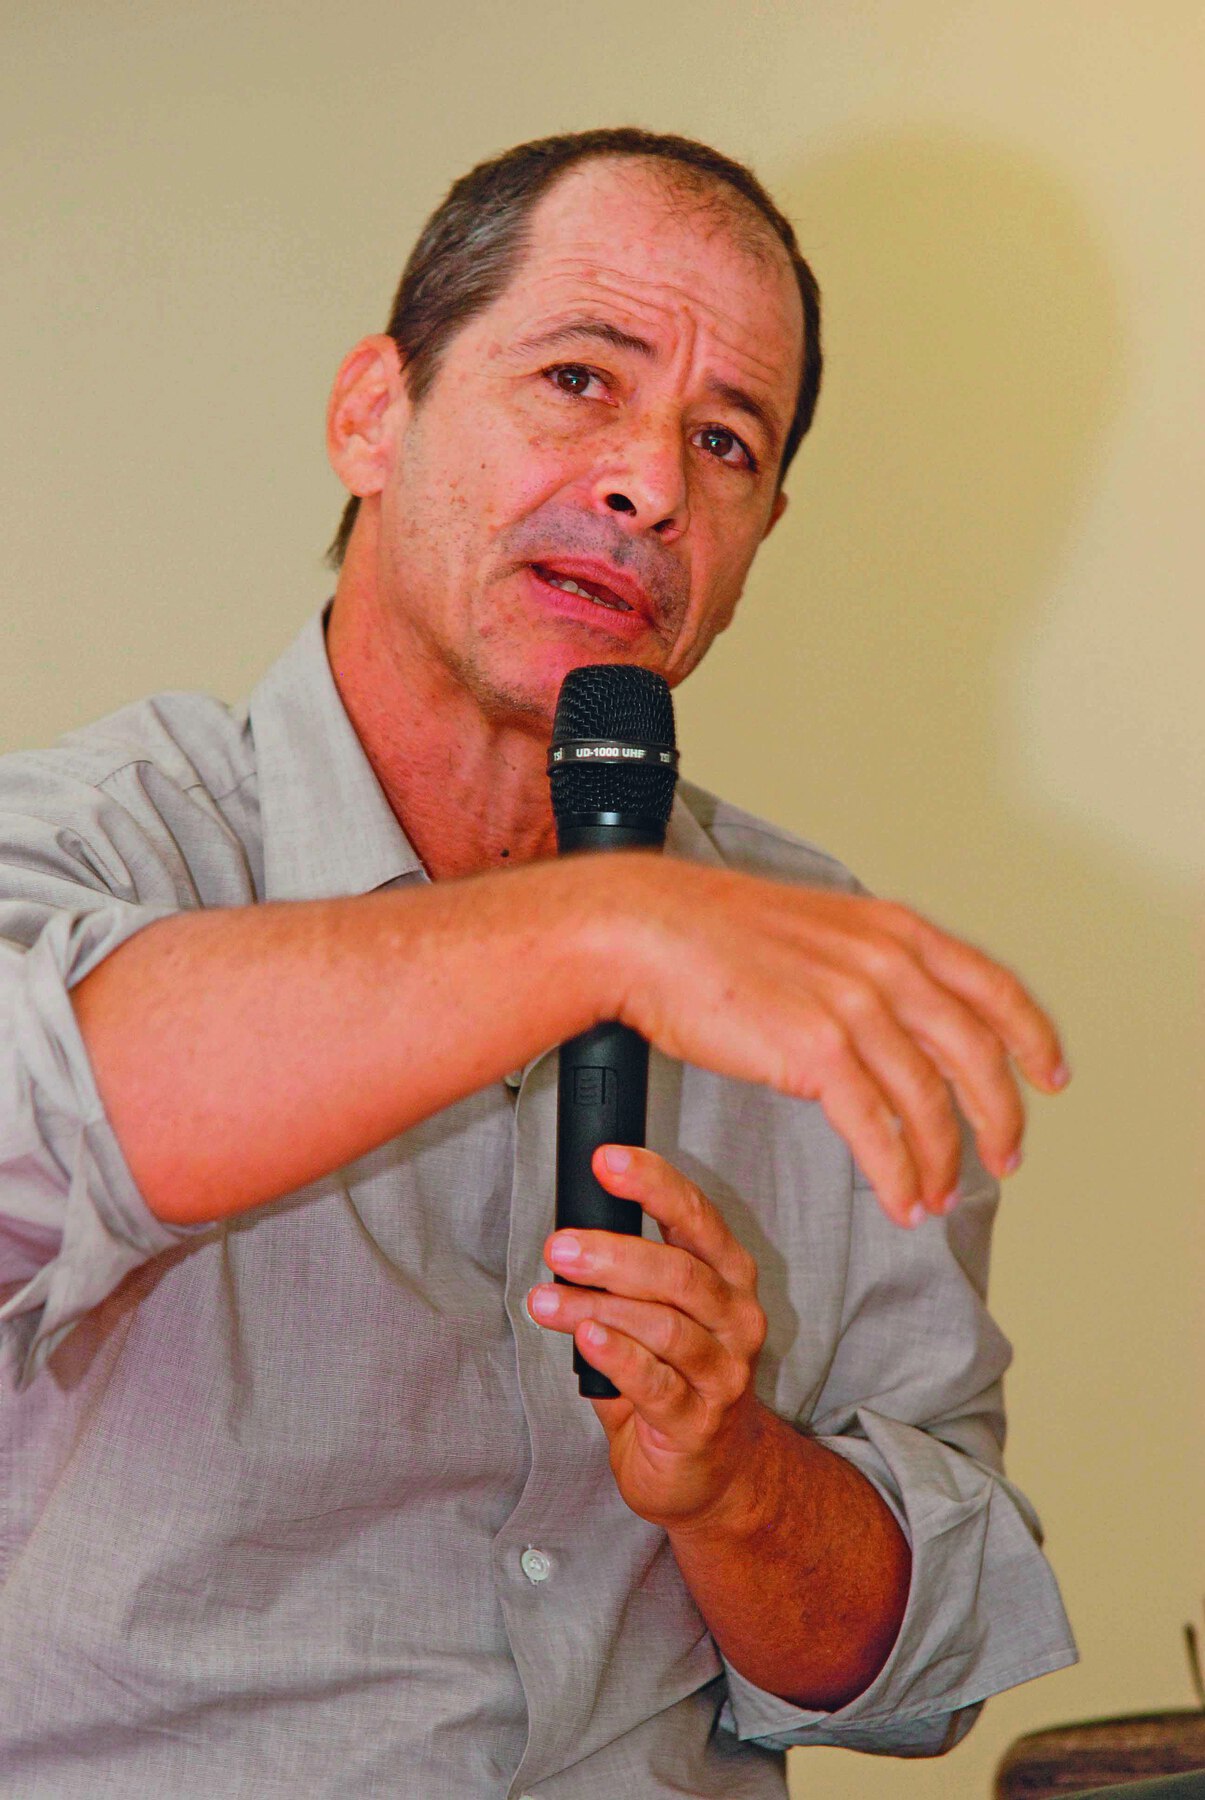 Fotografia. Homem de cabelo curto, calvo, veste uma camisa cinza e fala segurando um microfone na mão.